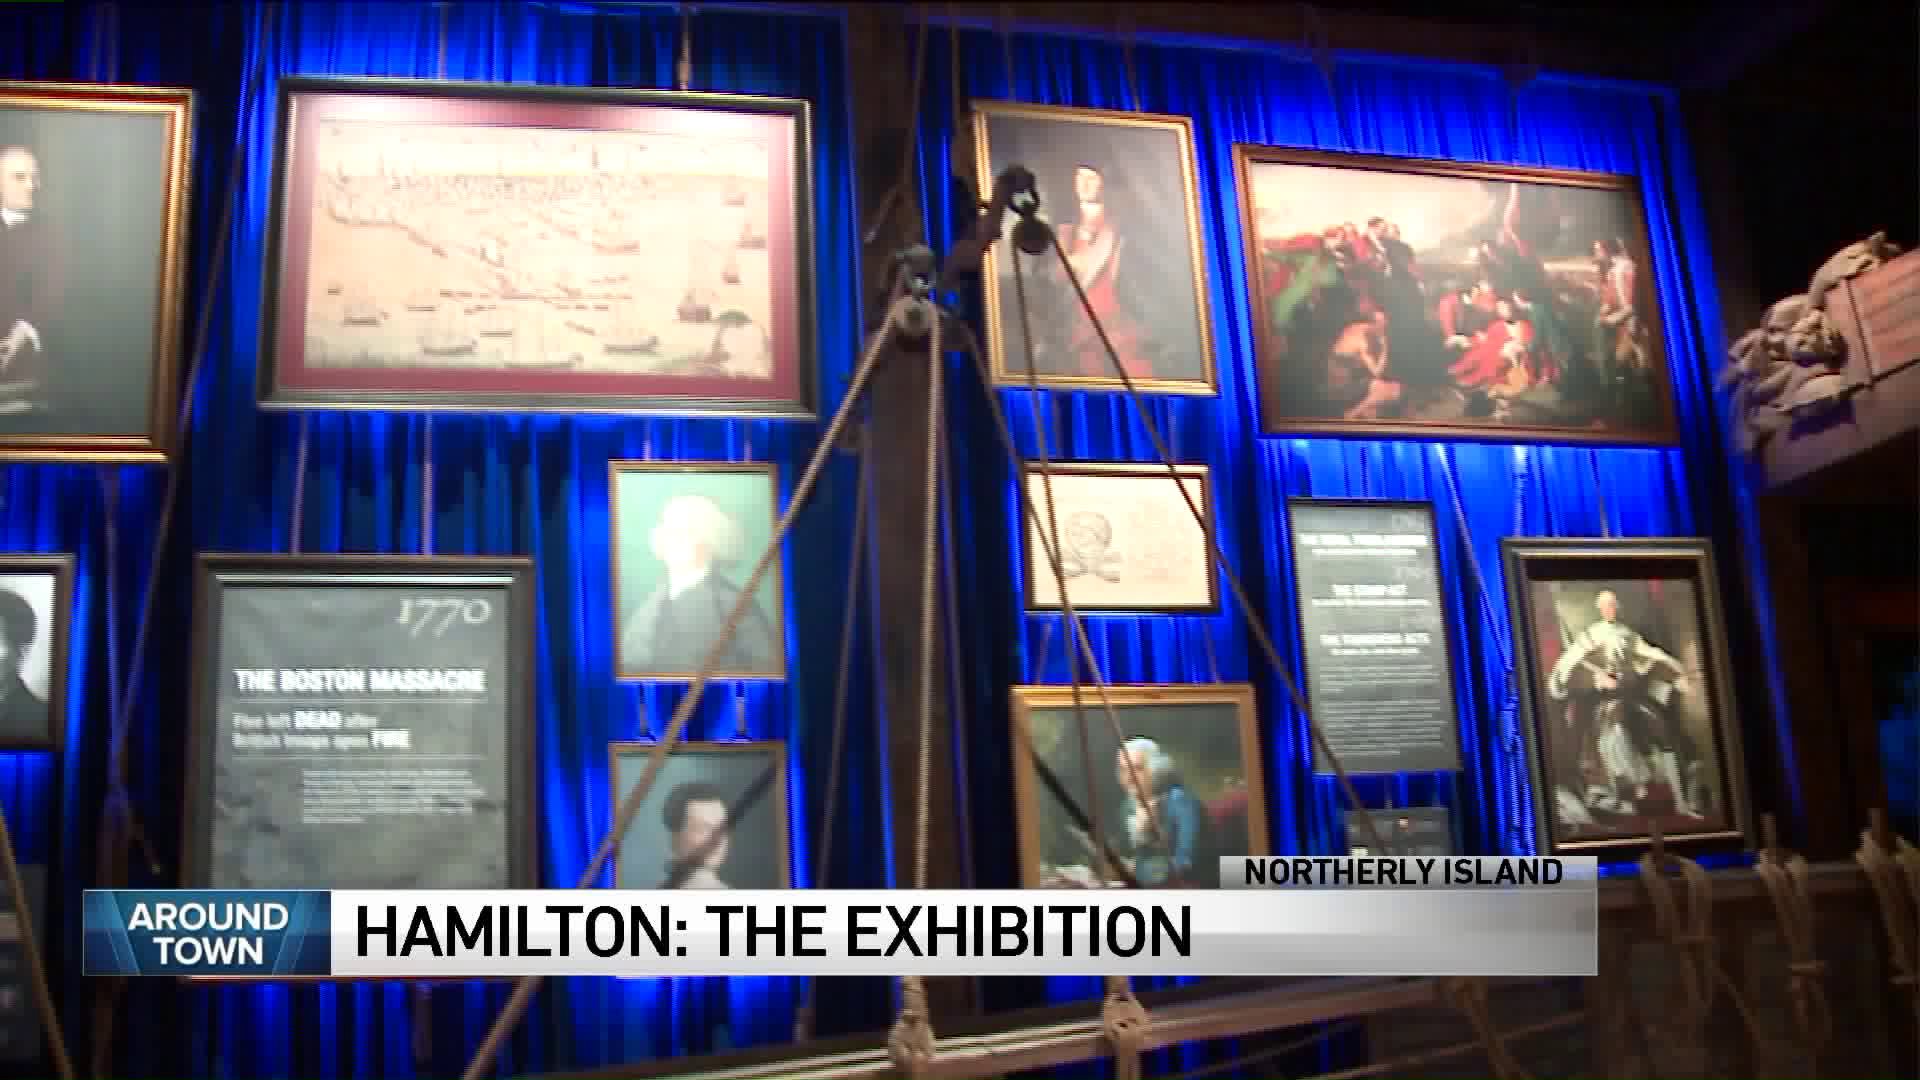 Around Town checks out Hamilton: The Exhibition